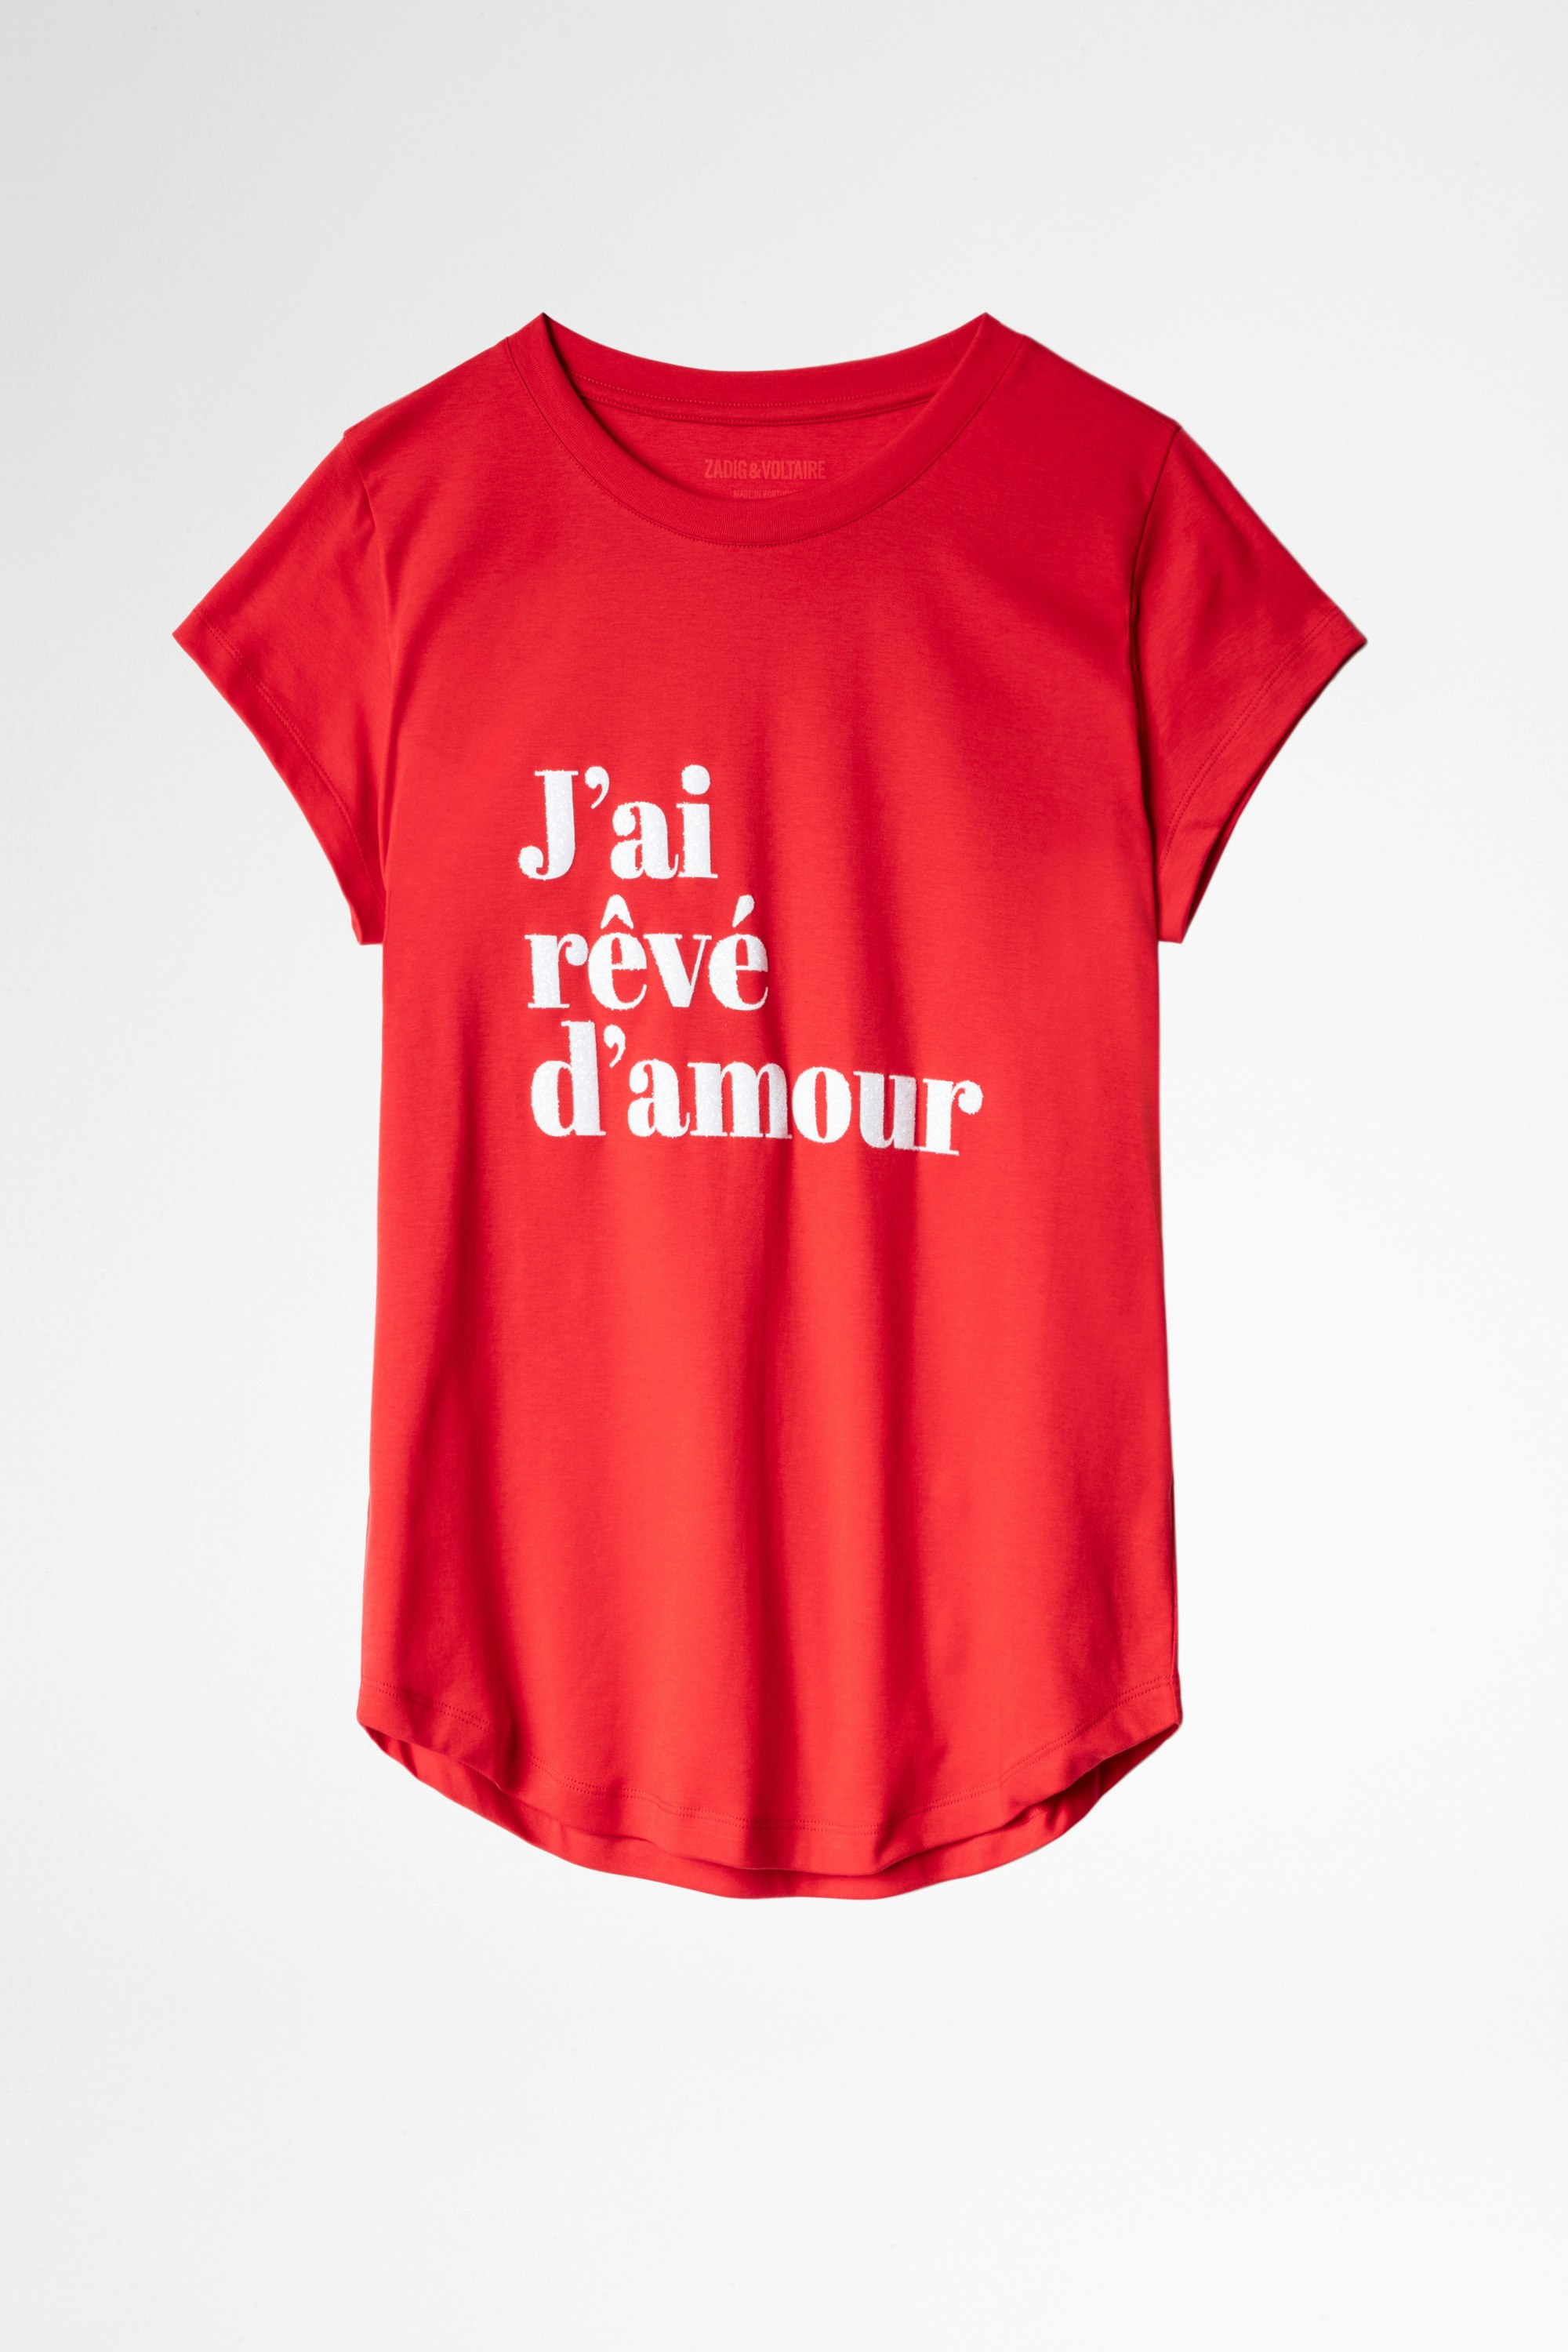 T-shirt Woop T-shirt rossa J’ai rêvé d’amour donna